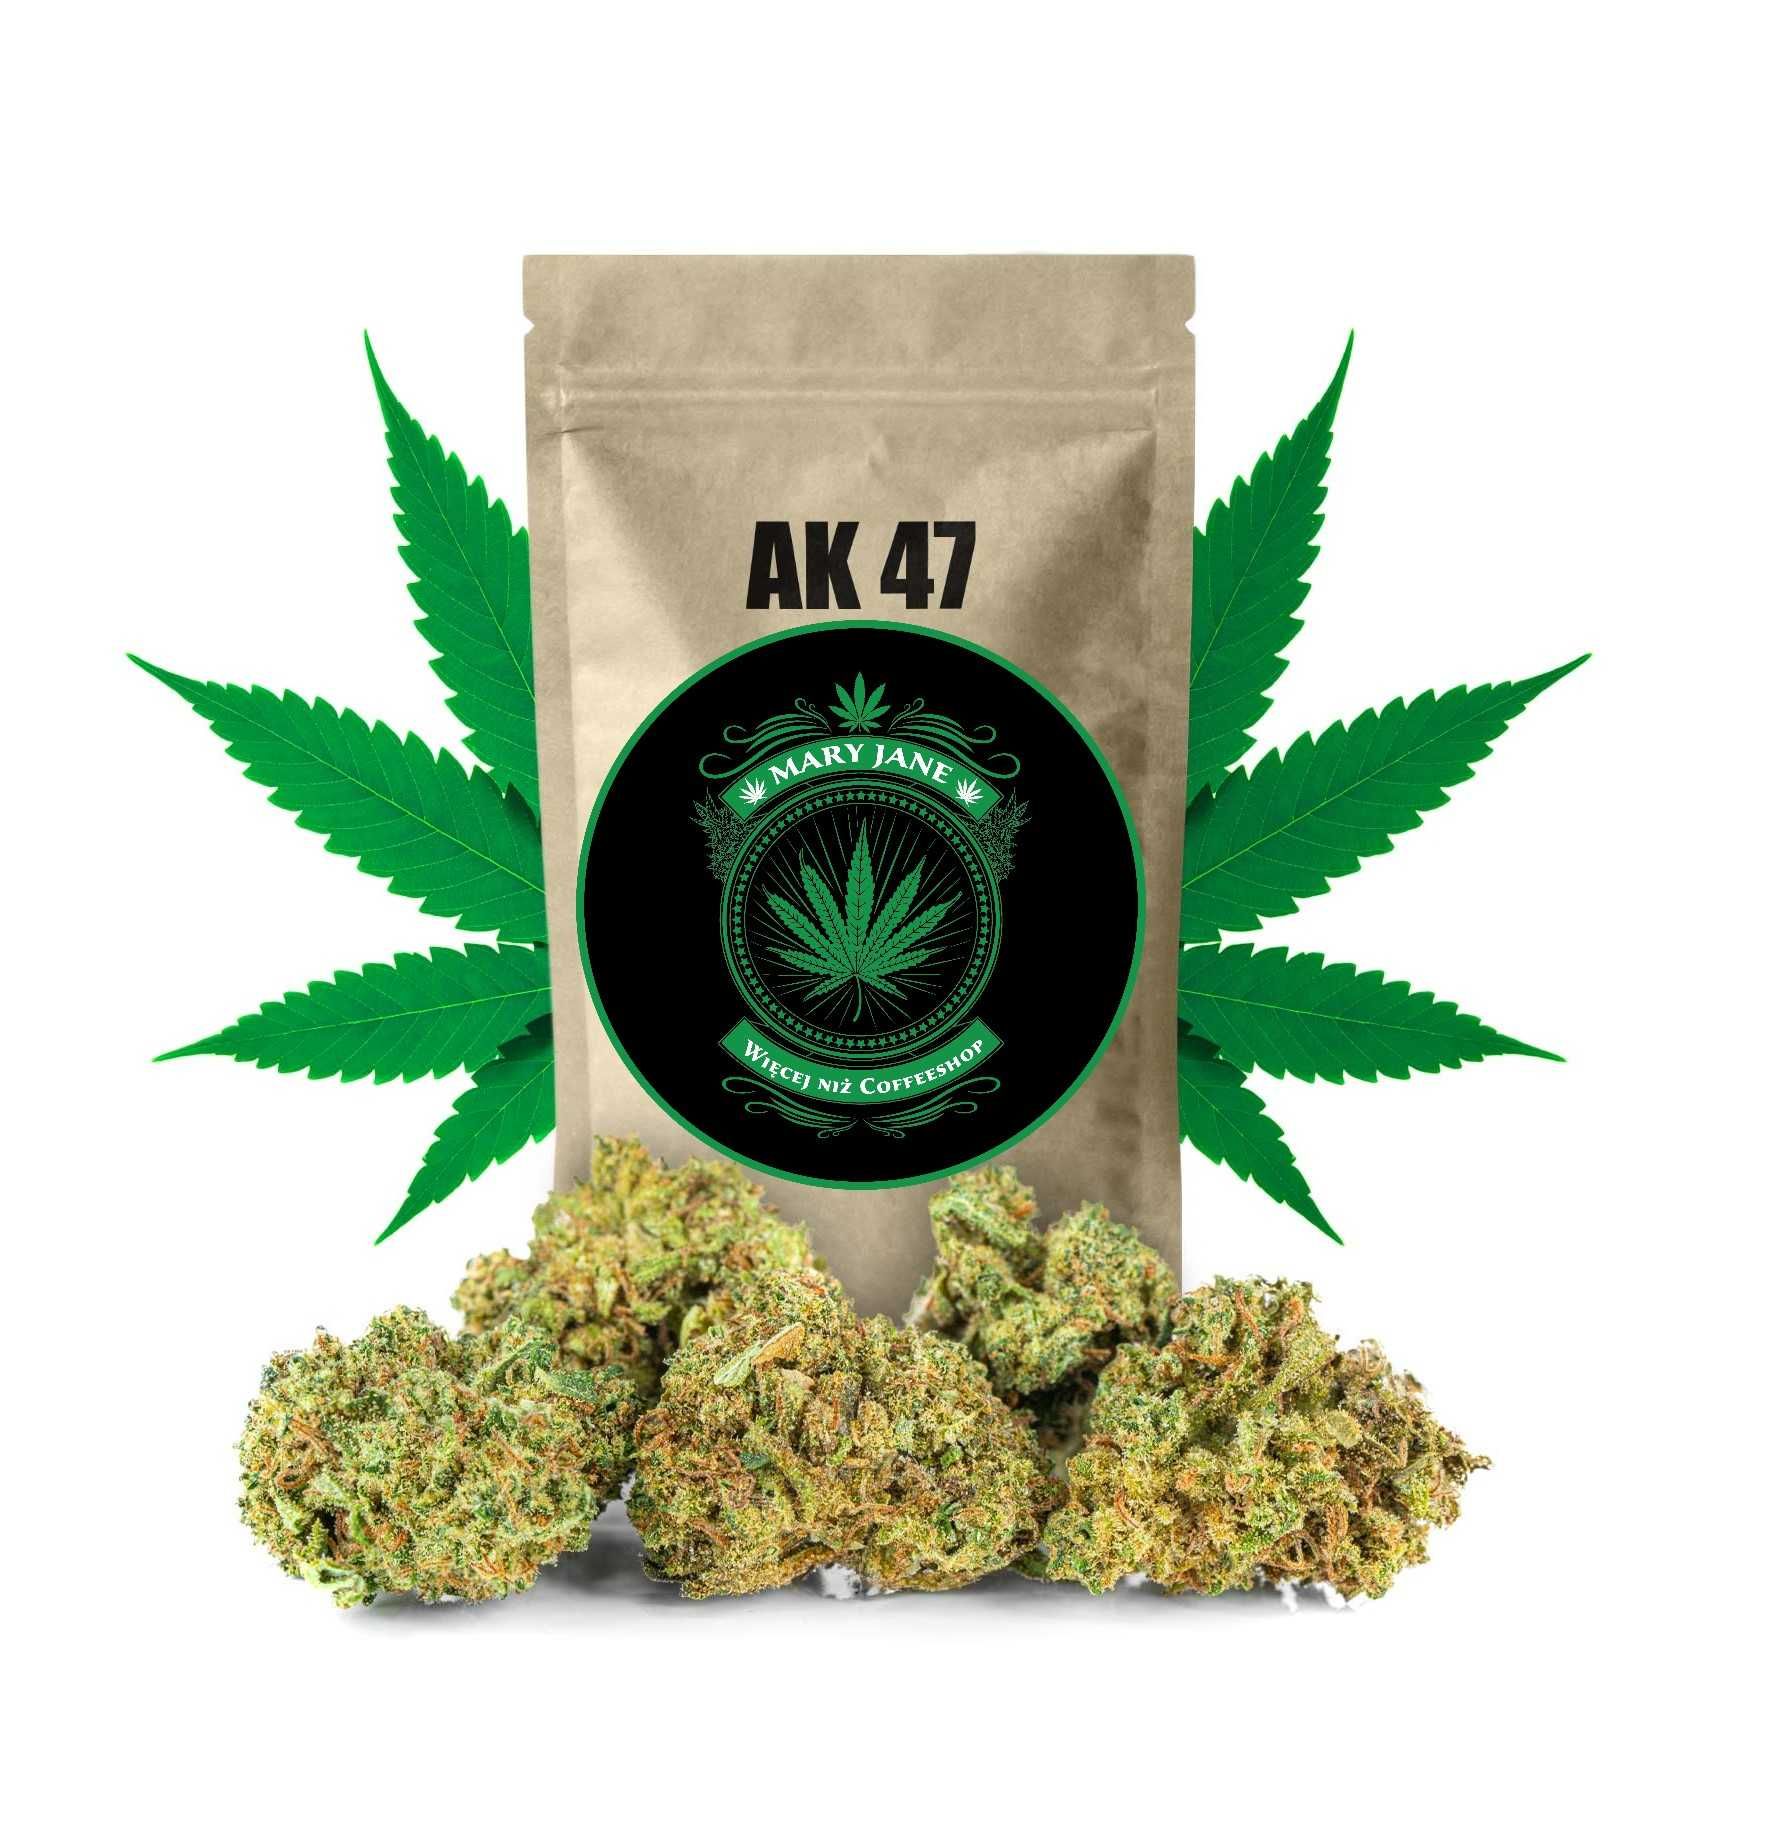 Sklep Mary Jane | AK 47 do 29% CBD - Legalny Susz Konopny | 2 gramy